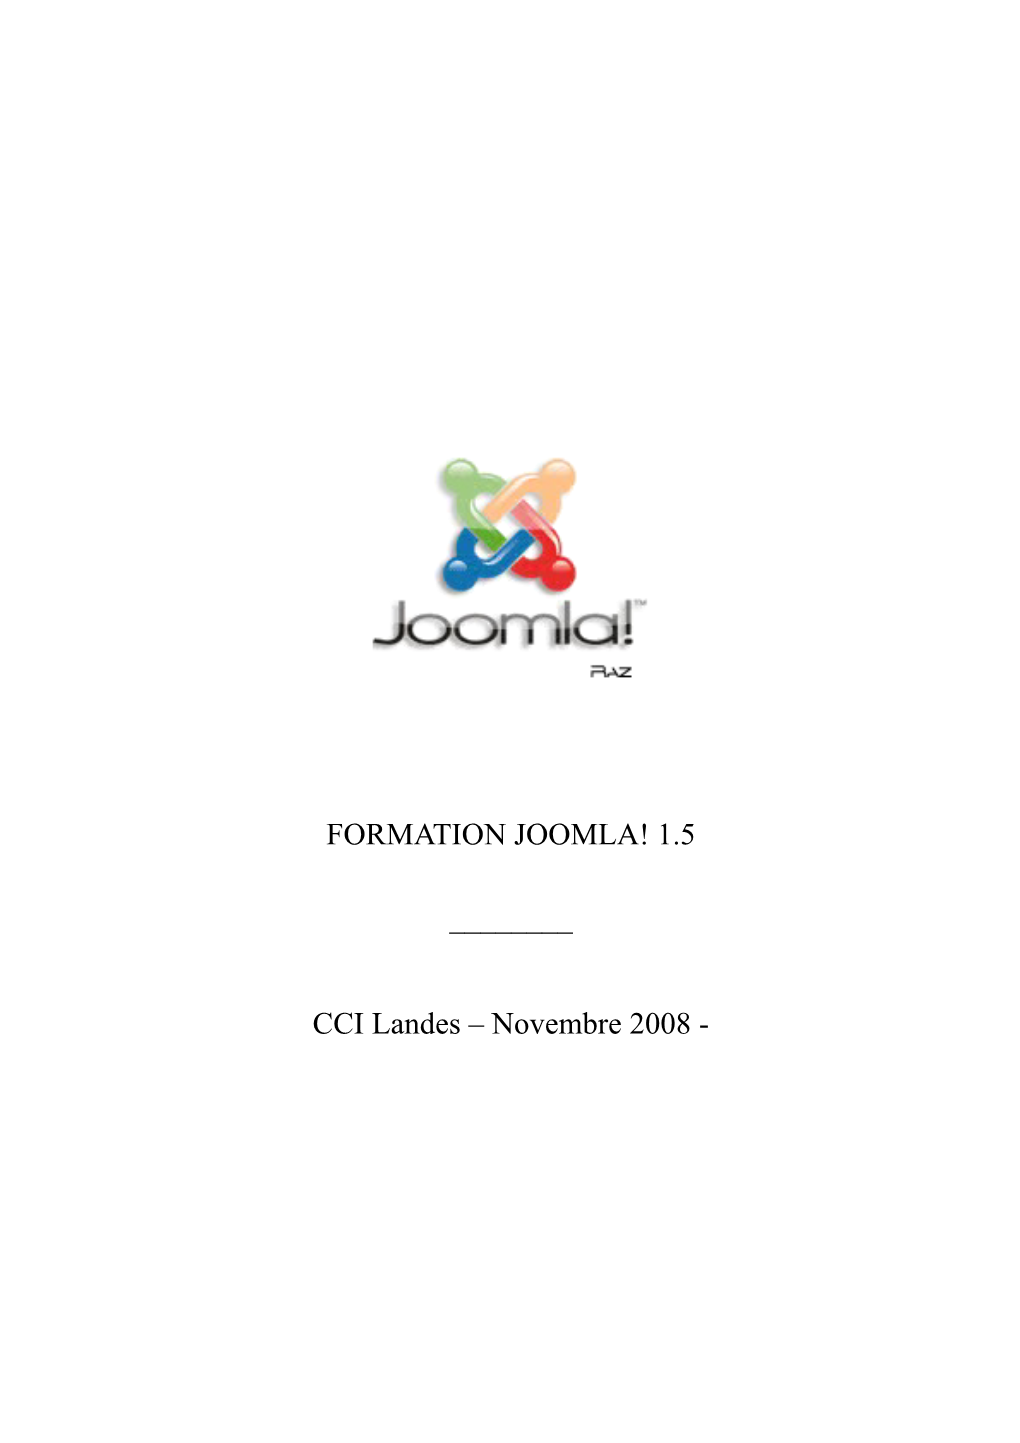 FORMATION JOOMLA! 1.5 ___CCI Landes – Novembre 2008